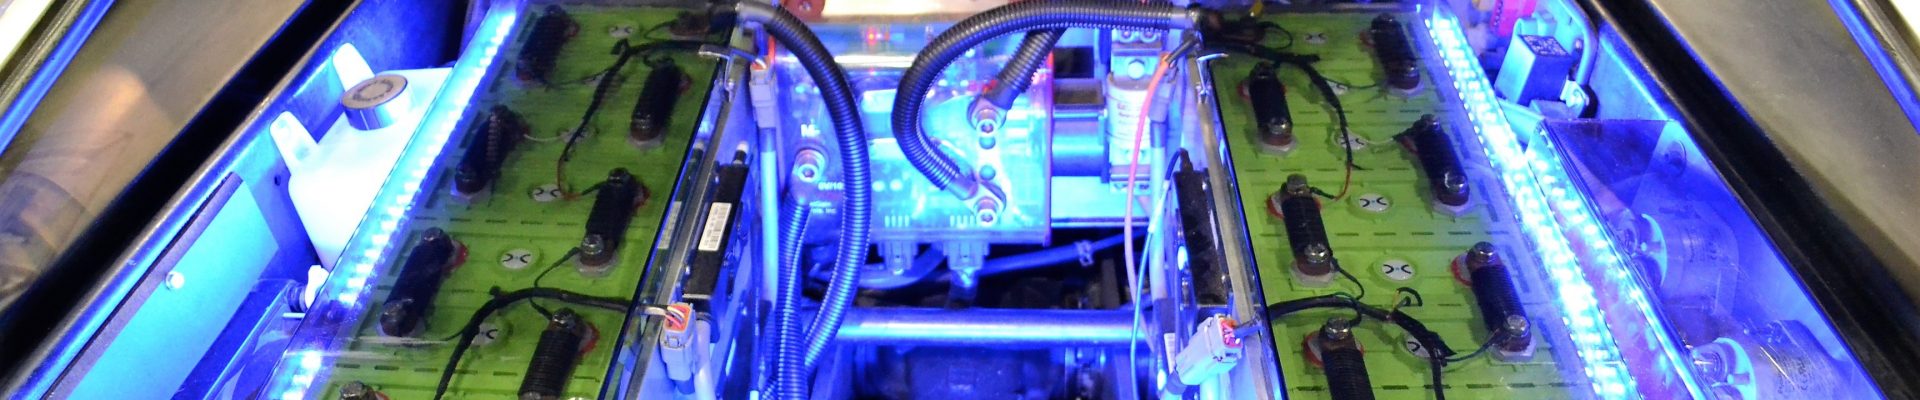 Antriebe - Blick in die Zukunft - modern rear engine 2773262 - Themen-Radio